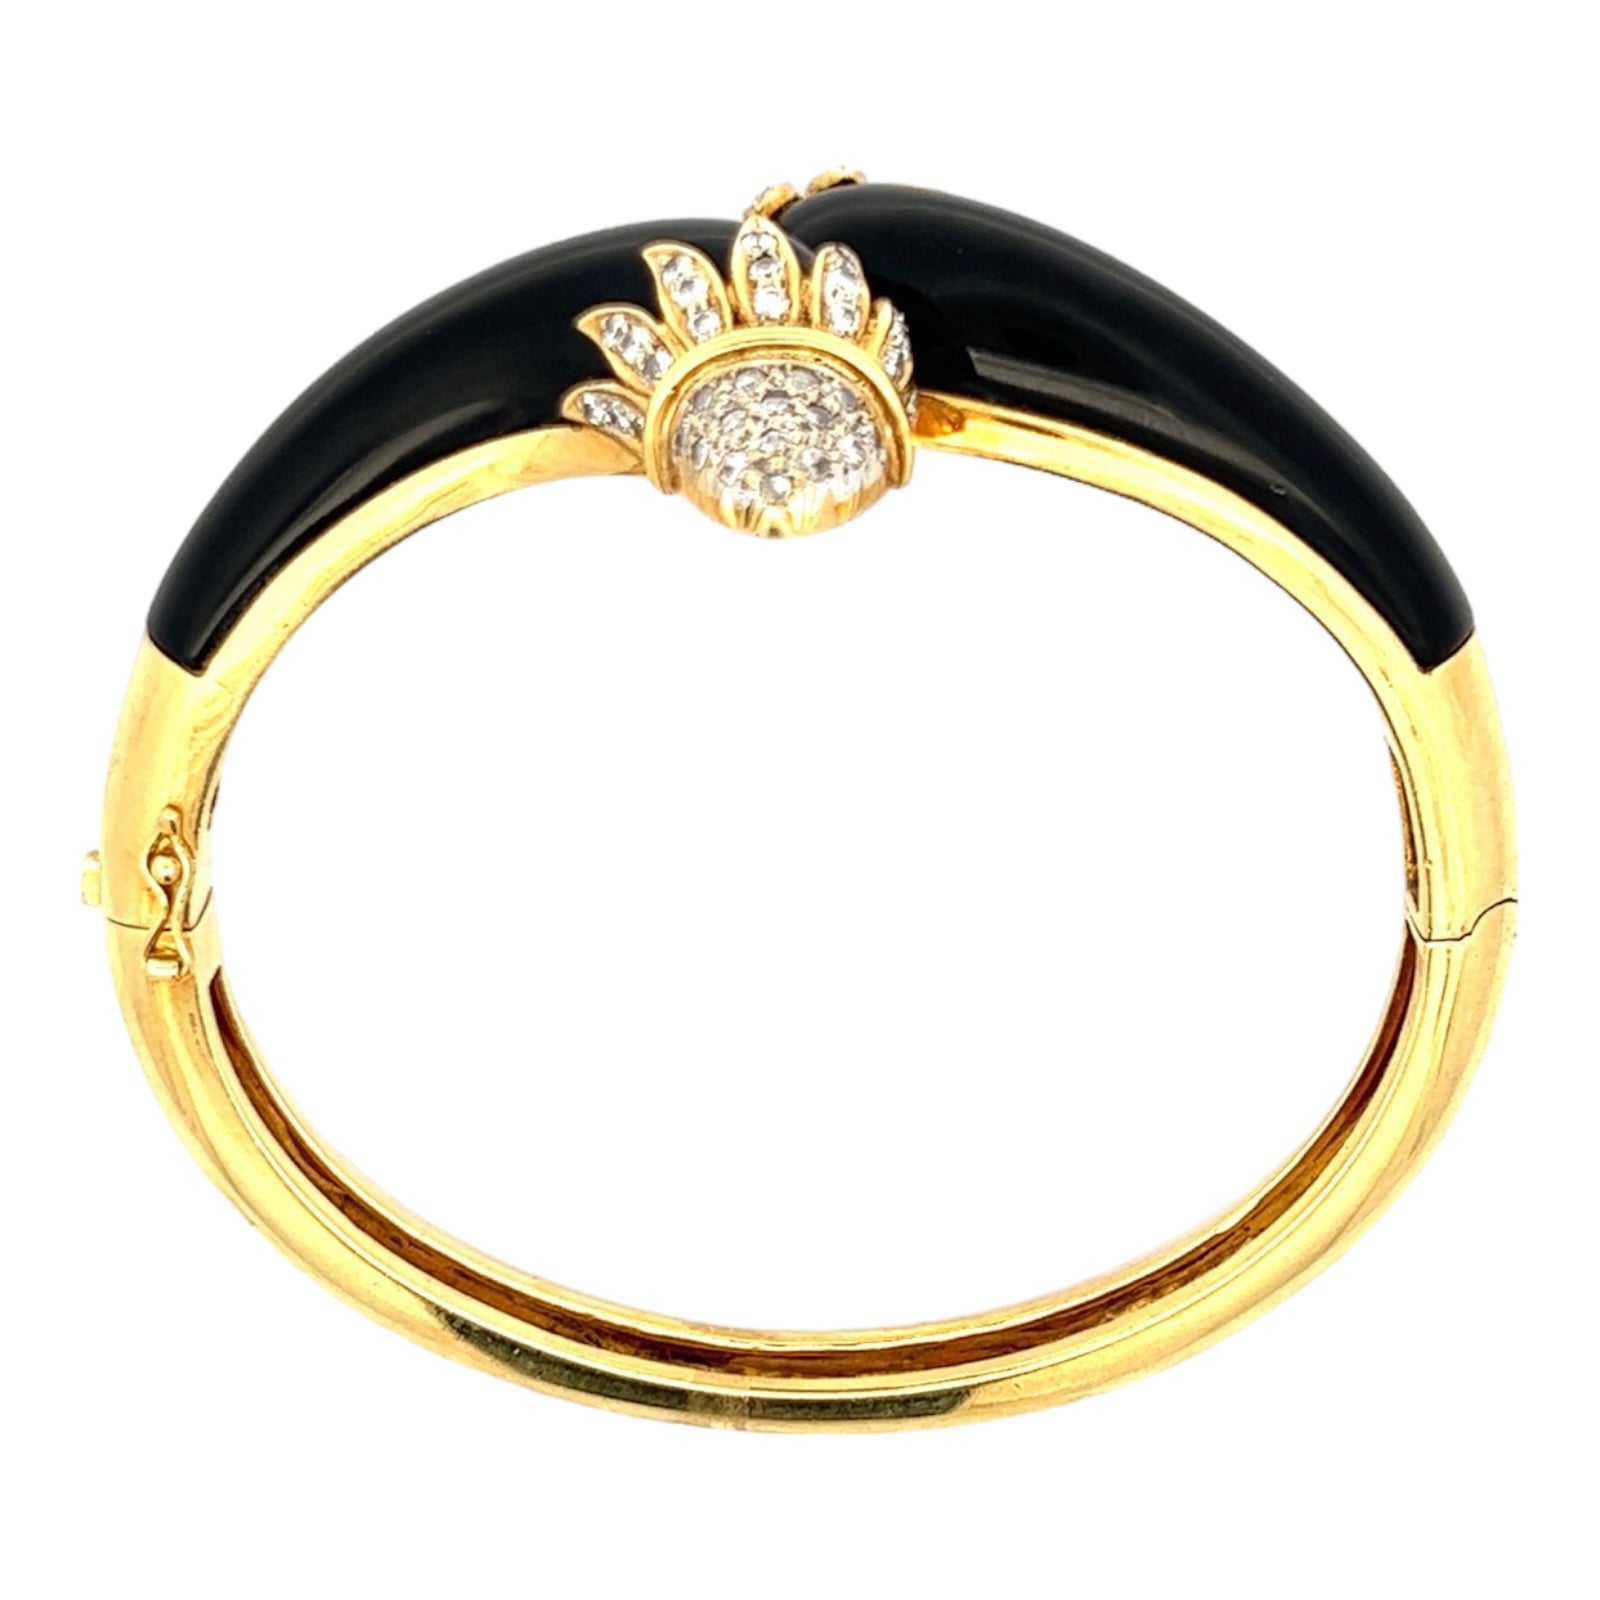 Braided gold Bracelet – Marie-Hélène de Taillac - US